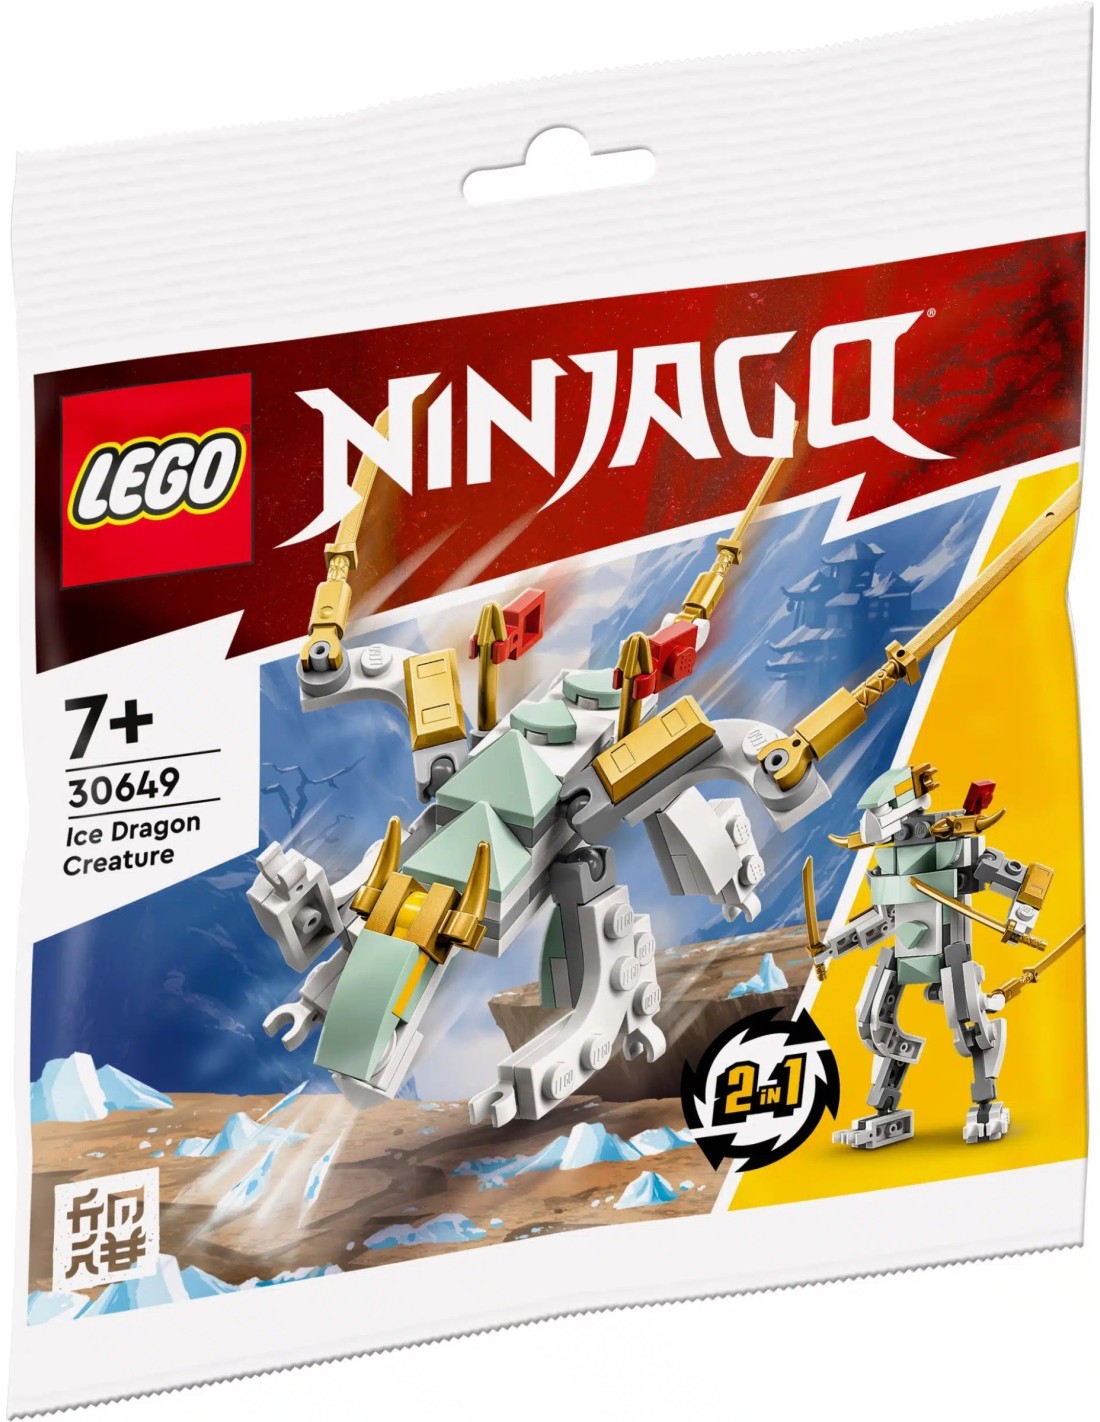 LEGO Ninjago - Le dragon de glace - 30649 - En stock chez